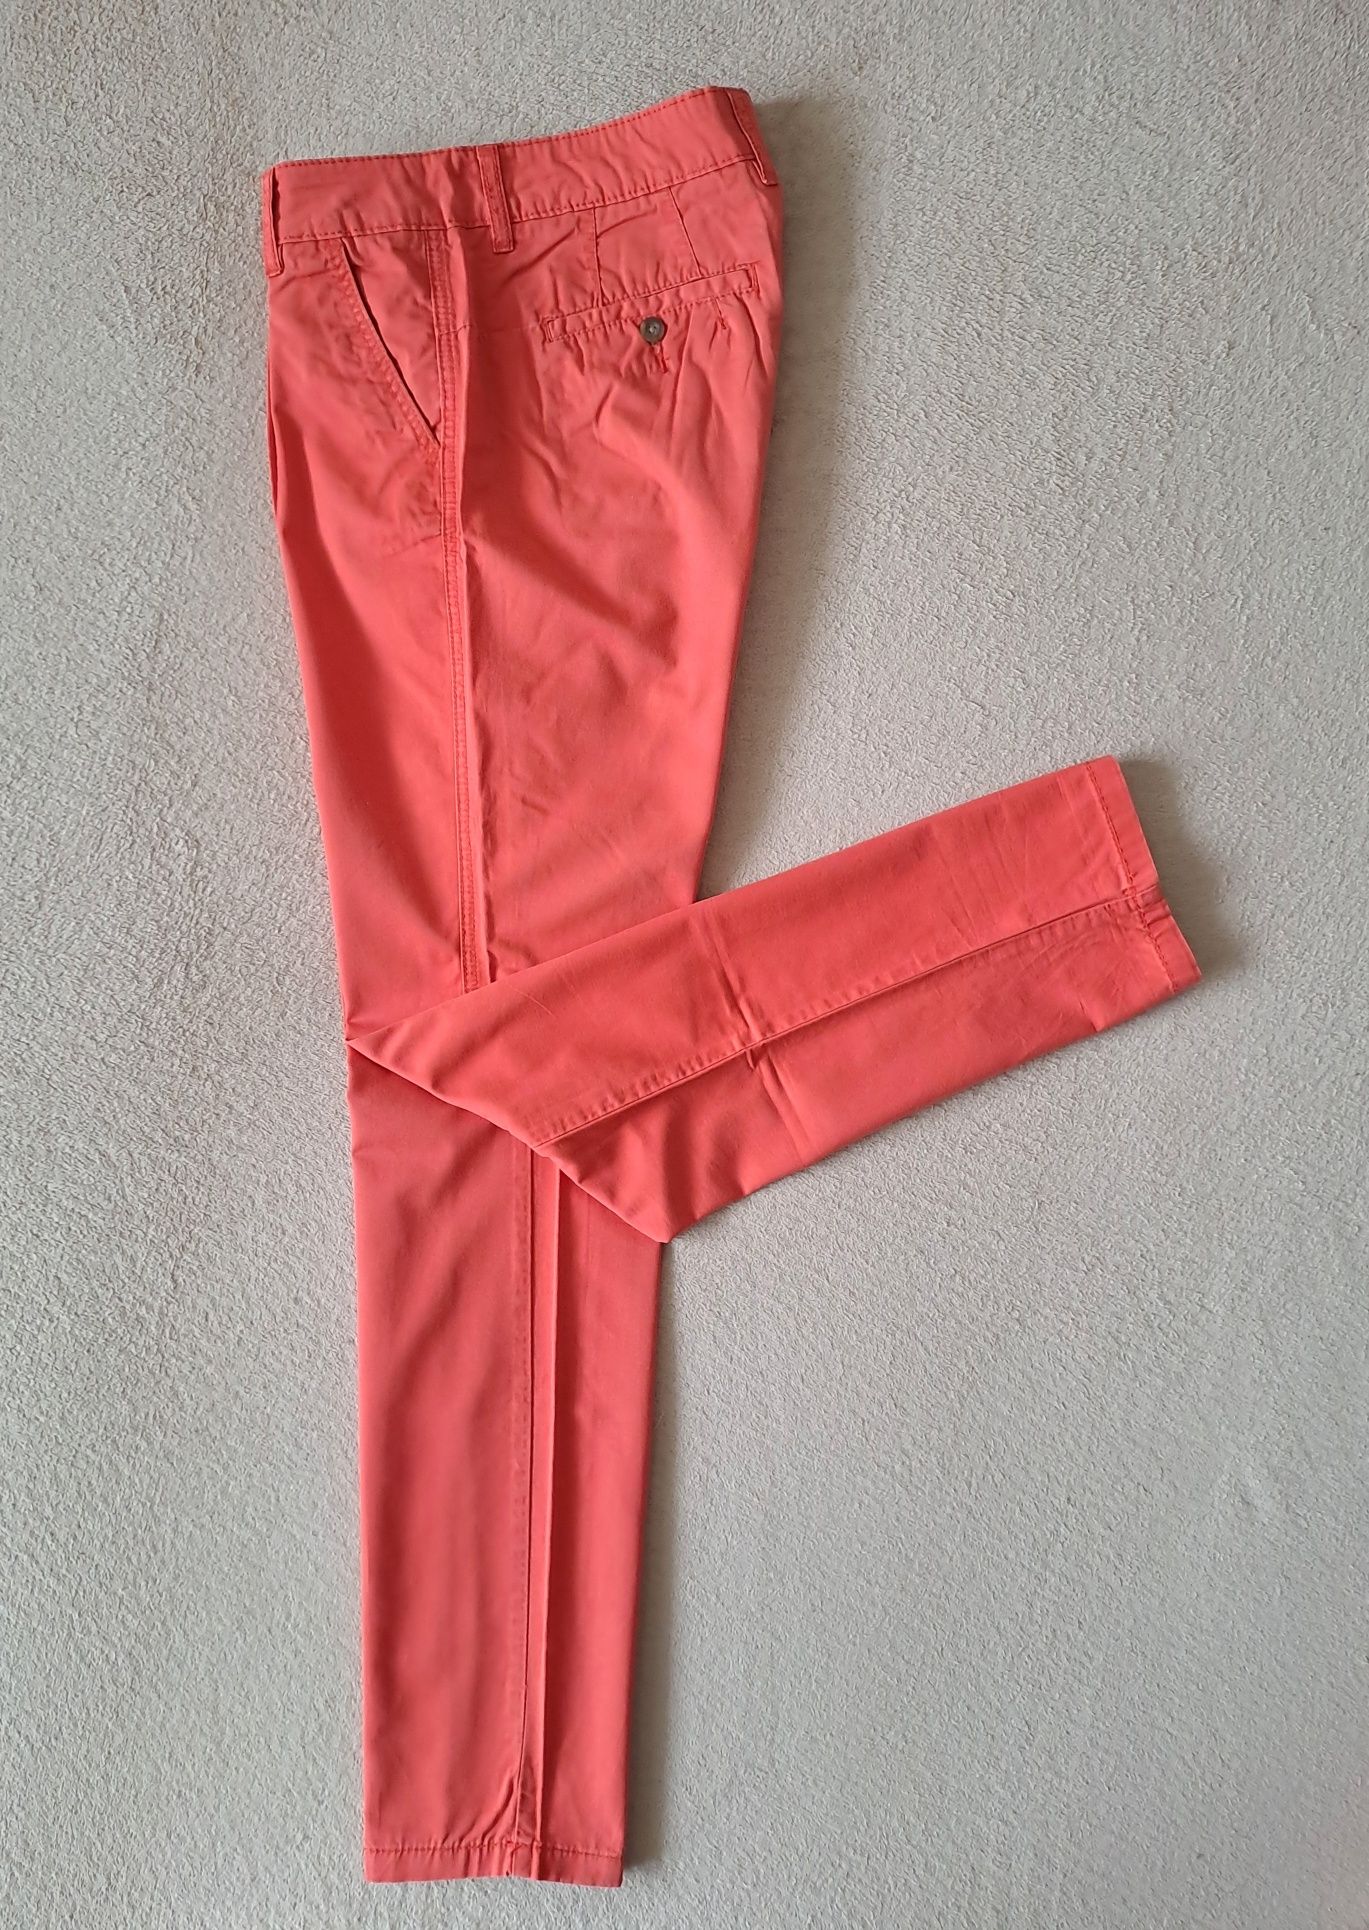 spodnie chino REVIEW roz. L styl klasyka moda komfort